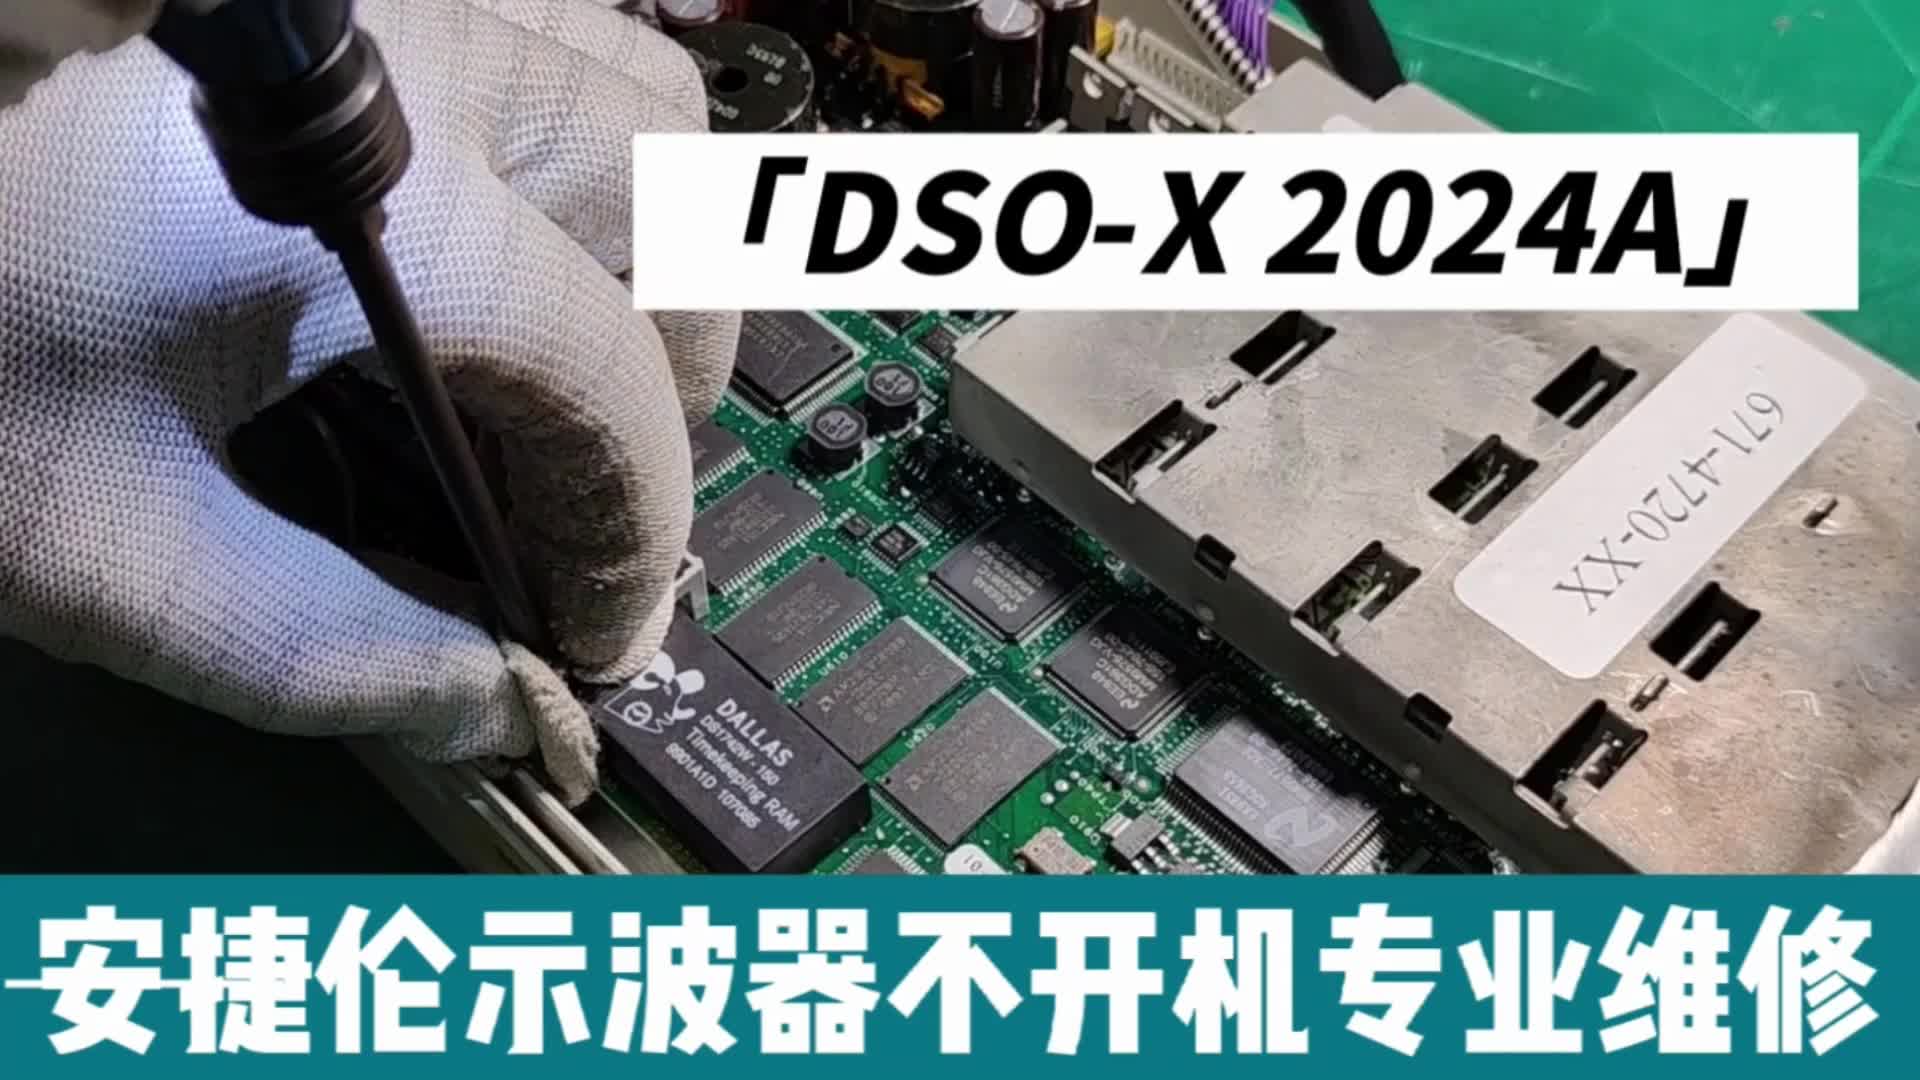 安捷伦DSO-X 2024A示波器不开机专业维修#示波器 